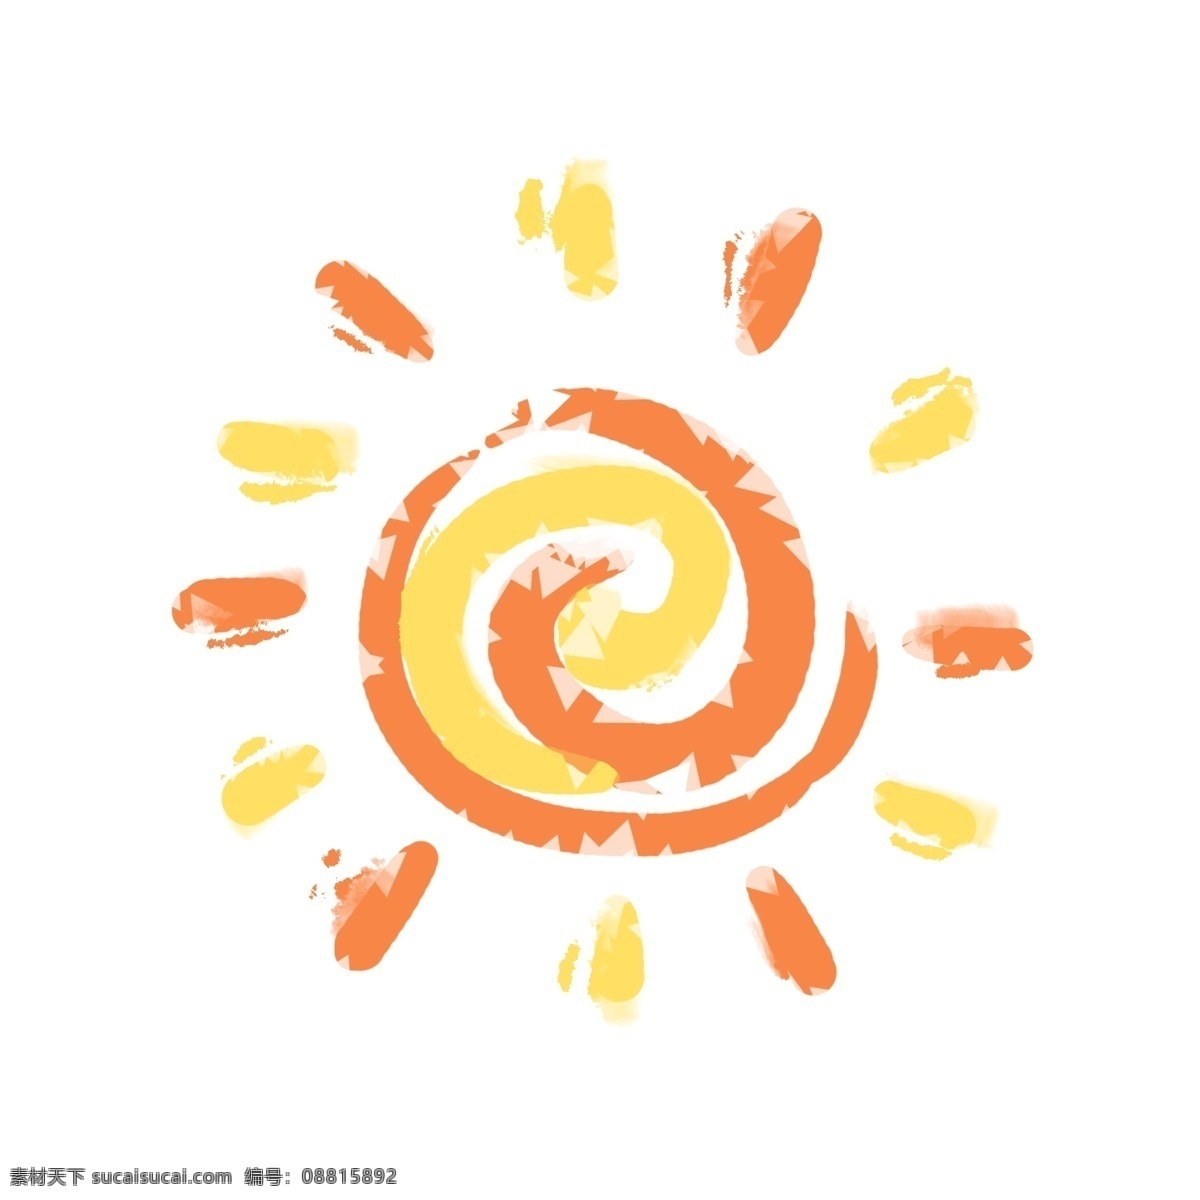 太阳素材 太阳矢量图 卡通太阳 太阳简笔画 手绘太阳